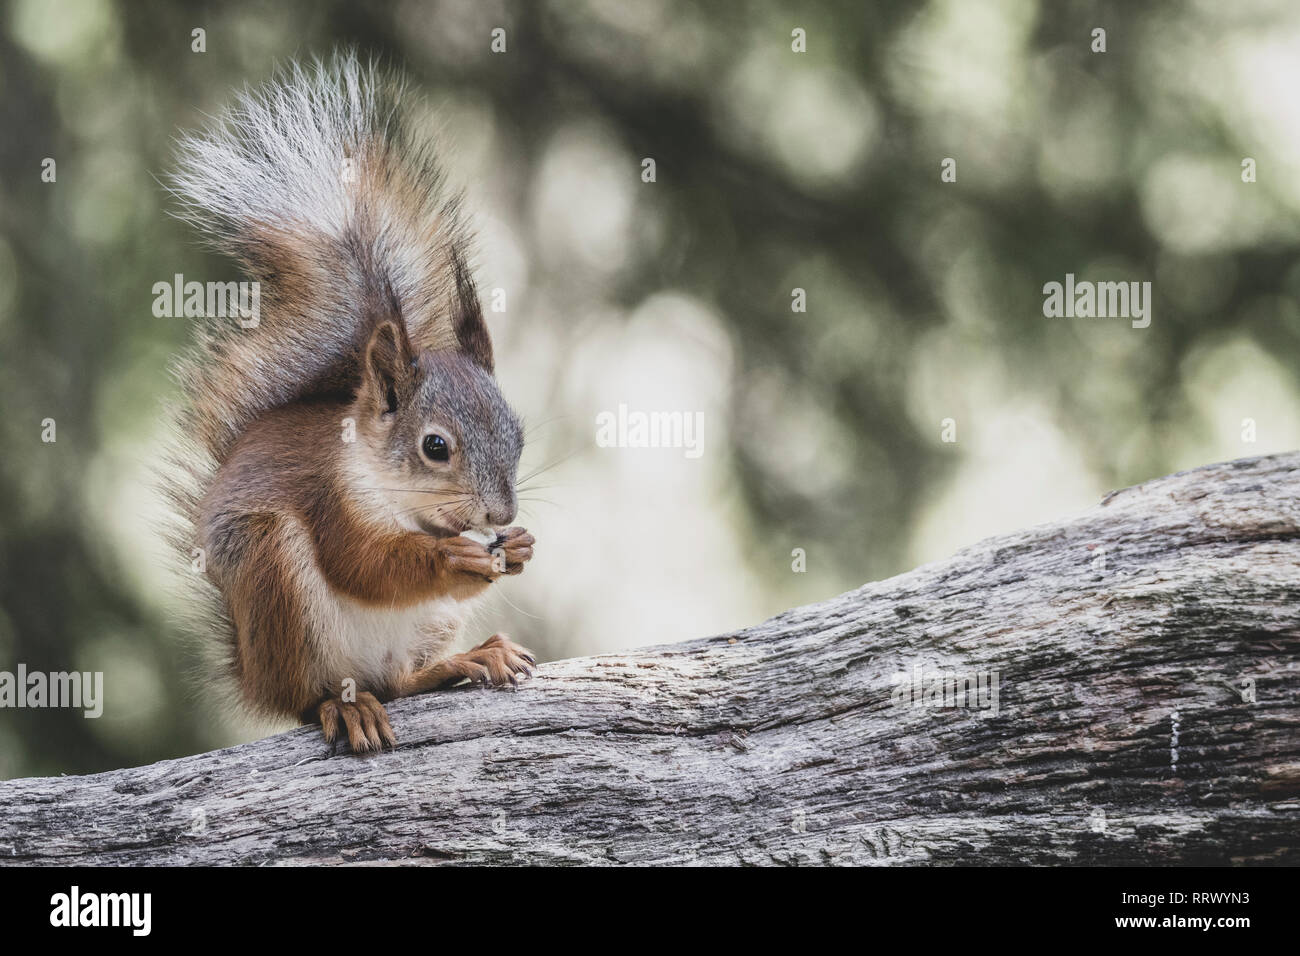 Red scoiattolo (Sciurus vulgaris) mangiando un dado. Foto Stock